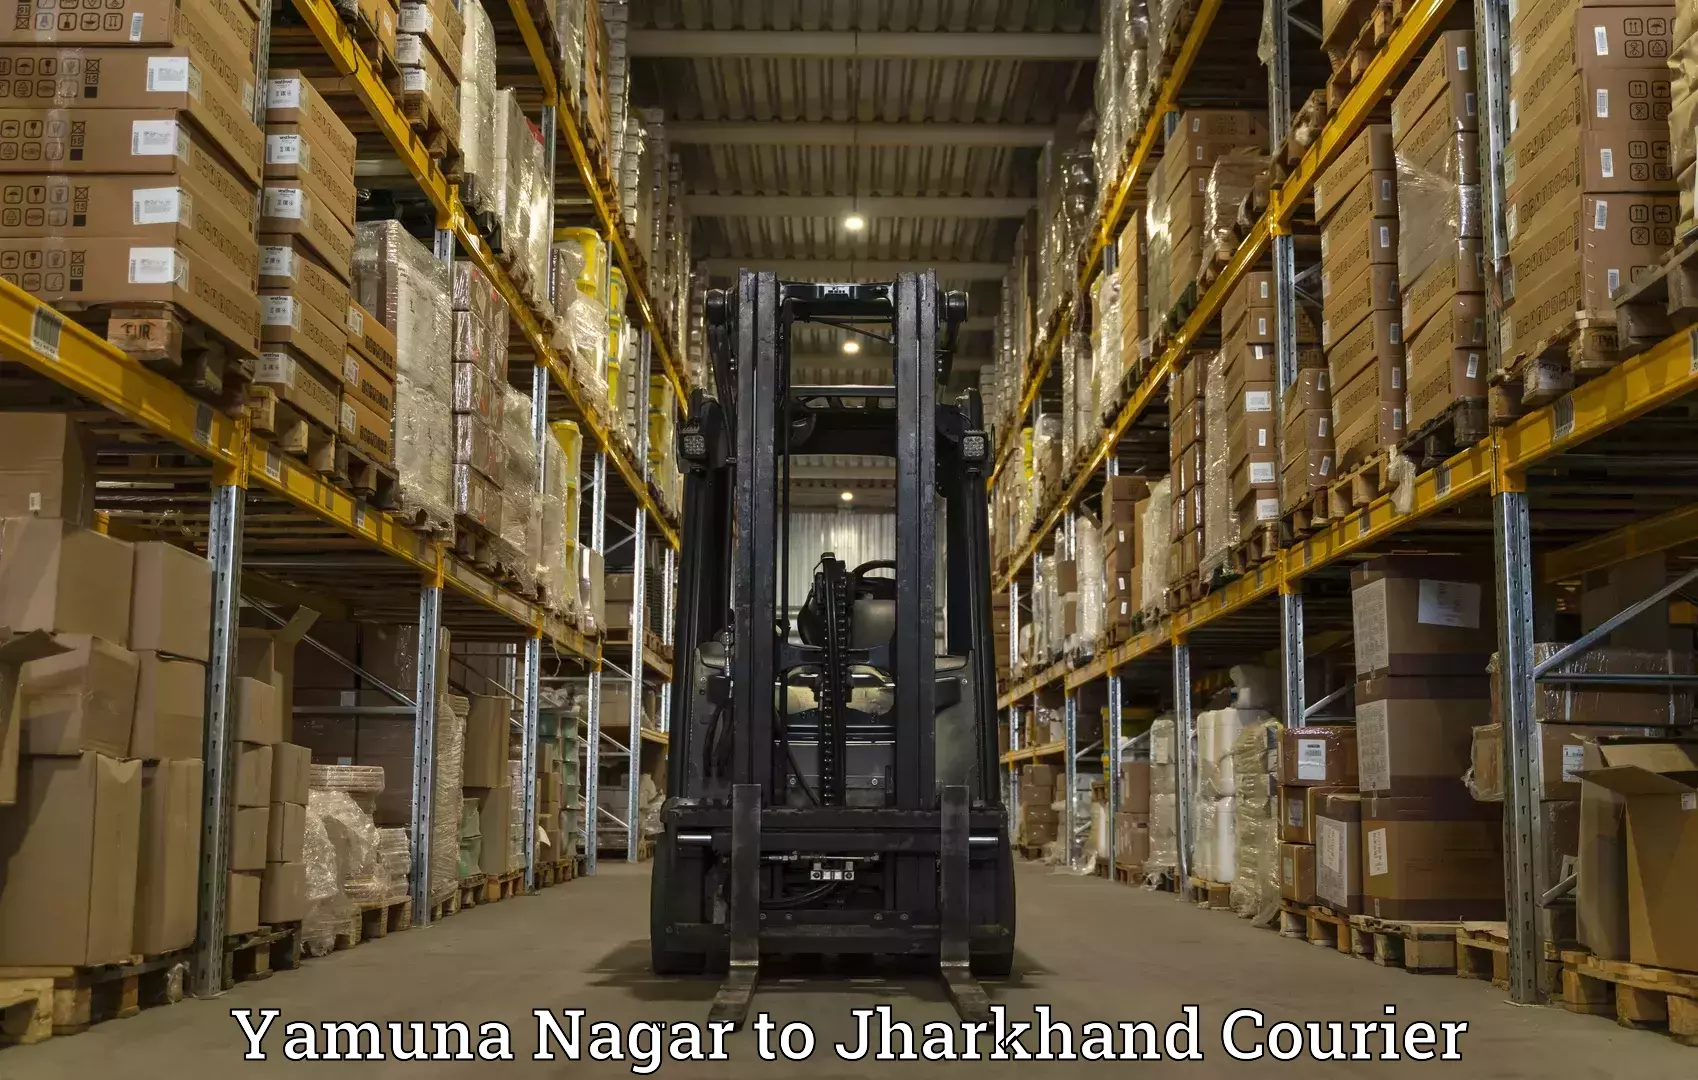 Advanced shipping services Yamuna Nagar to Koderma